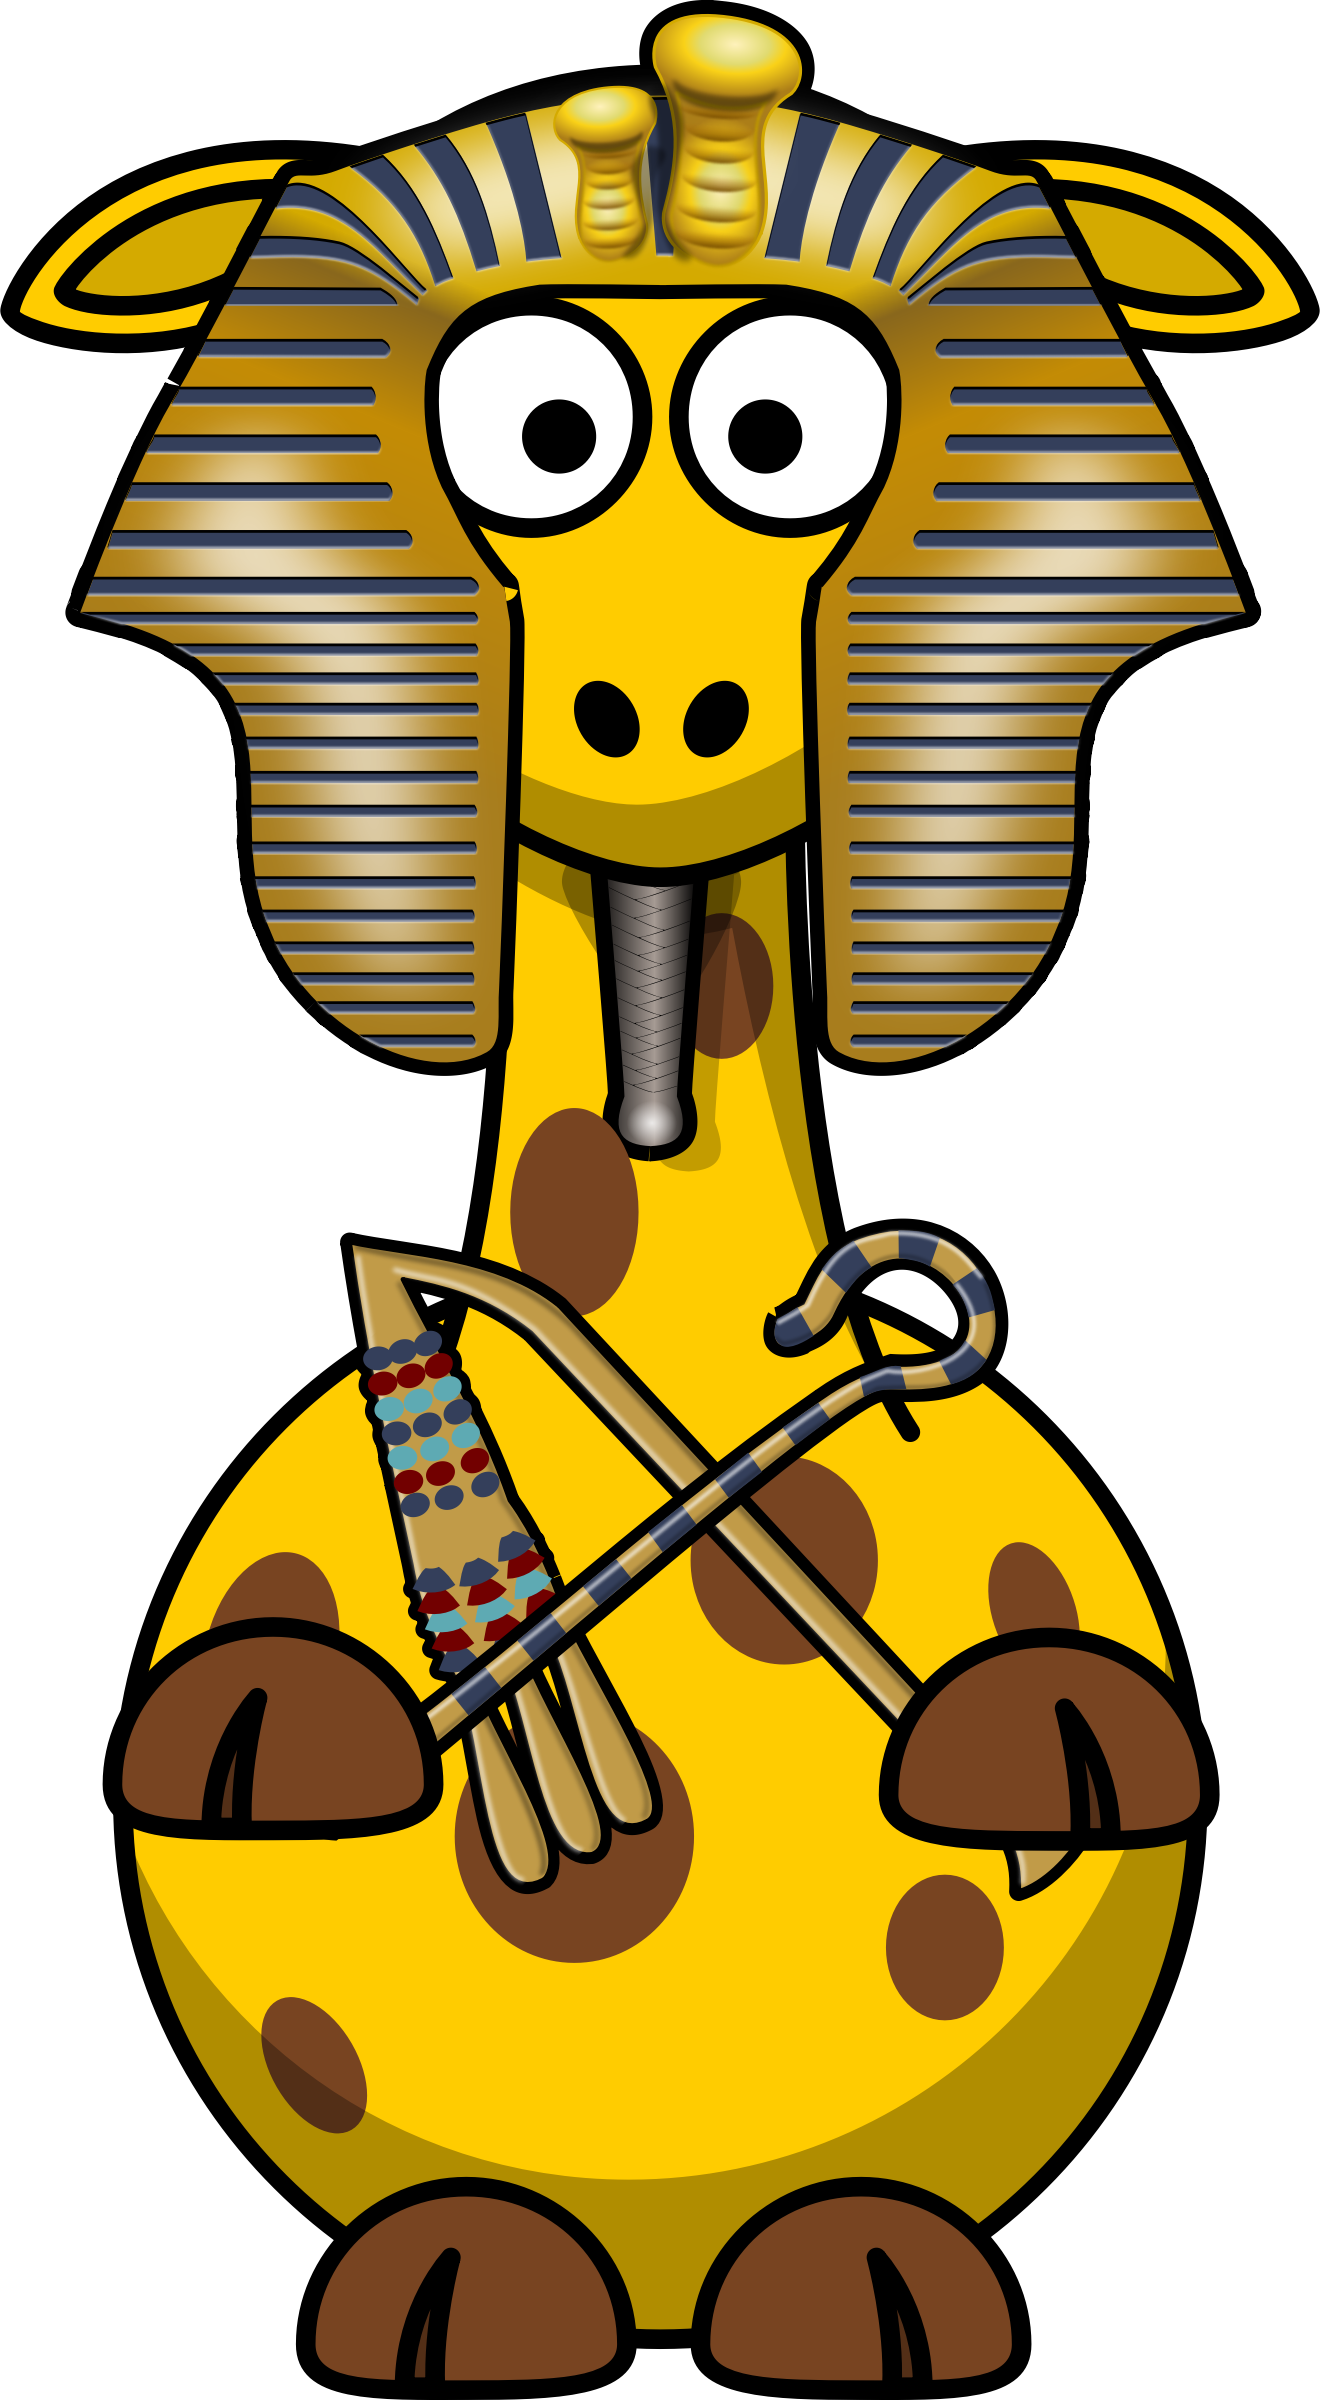 Giraffe pharao big image. Egypt clipart pharo